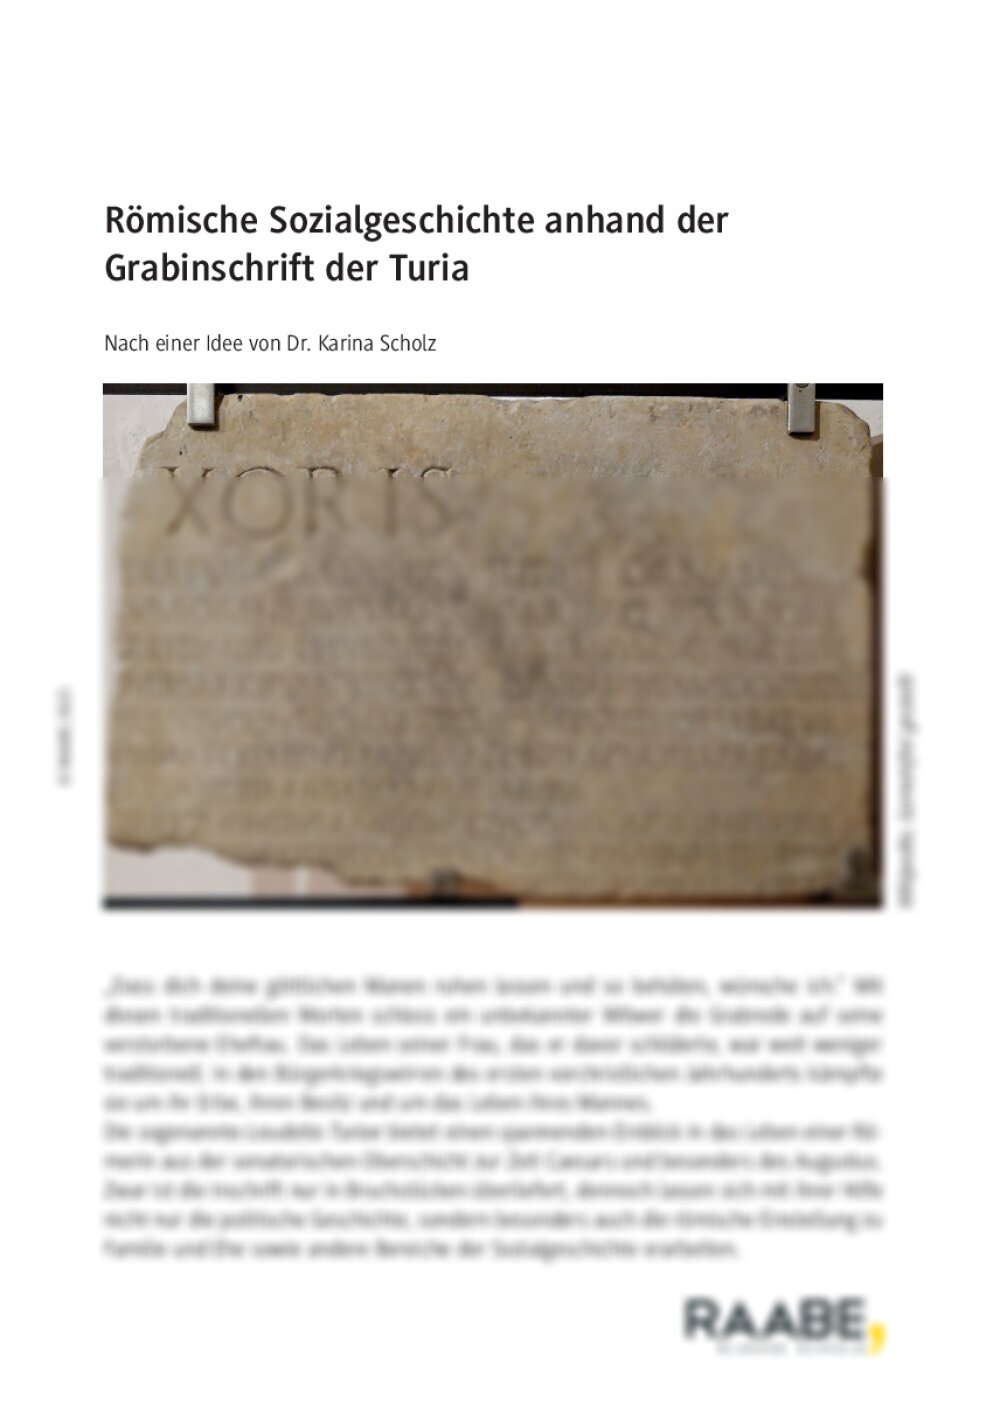 Römische Sozialgeschichte anhand der Grabinschrift der Turia - Seite 1